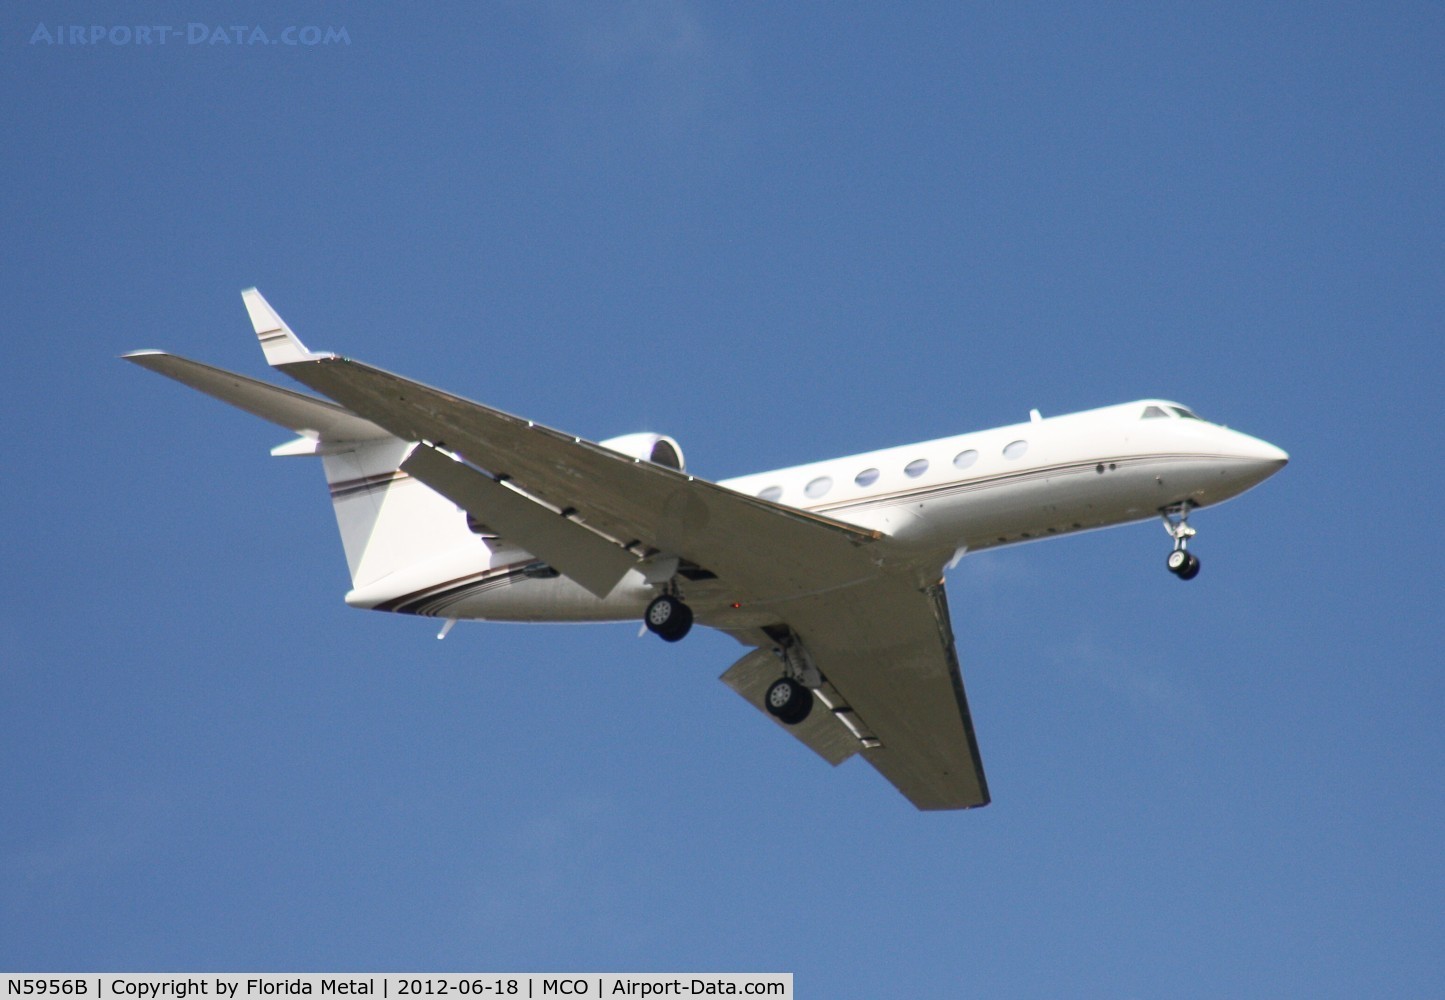 N5956B, 2001 Gulfstream Aerospace G-IV C/N 1469, Gulfstream IV